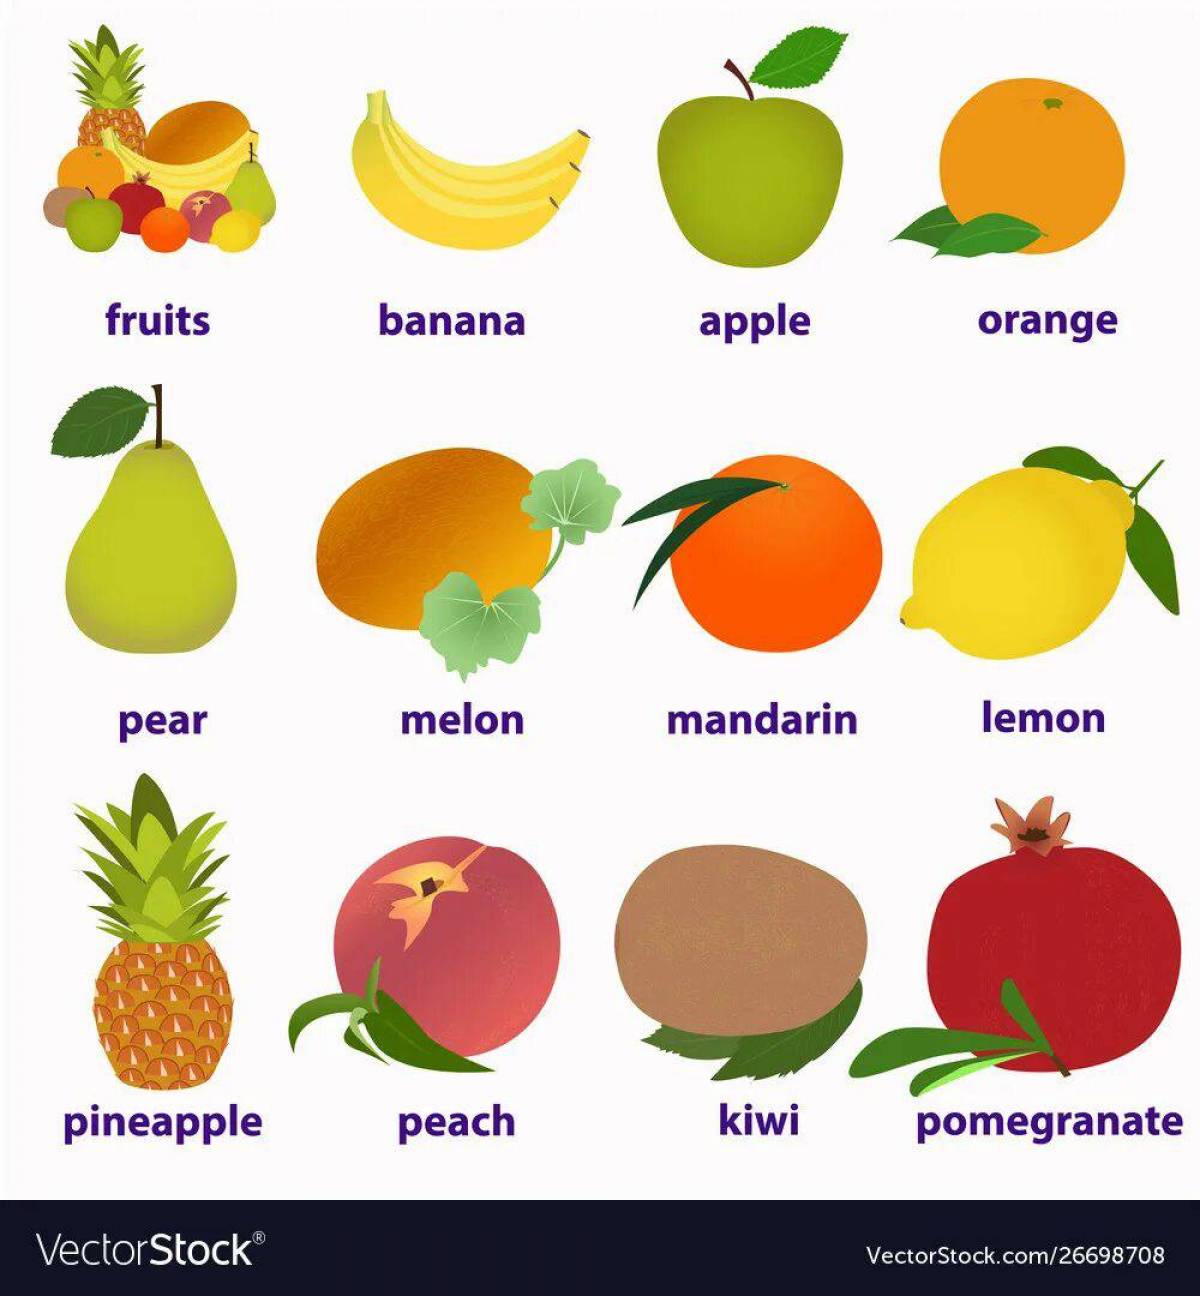 Для детей фрукты на английском #37